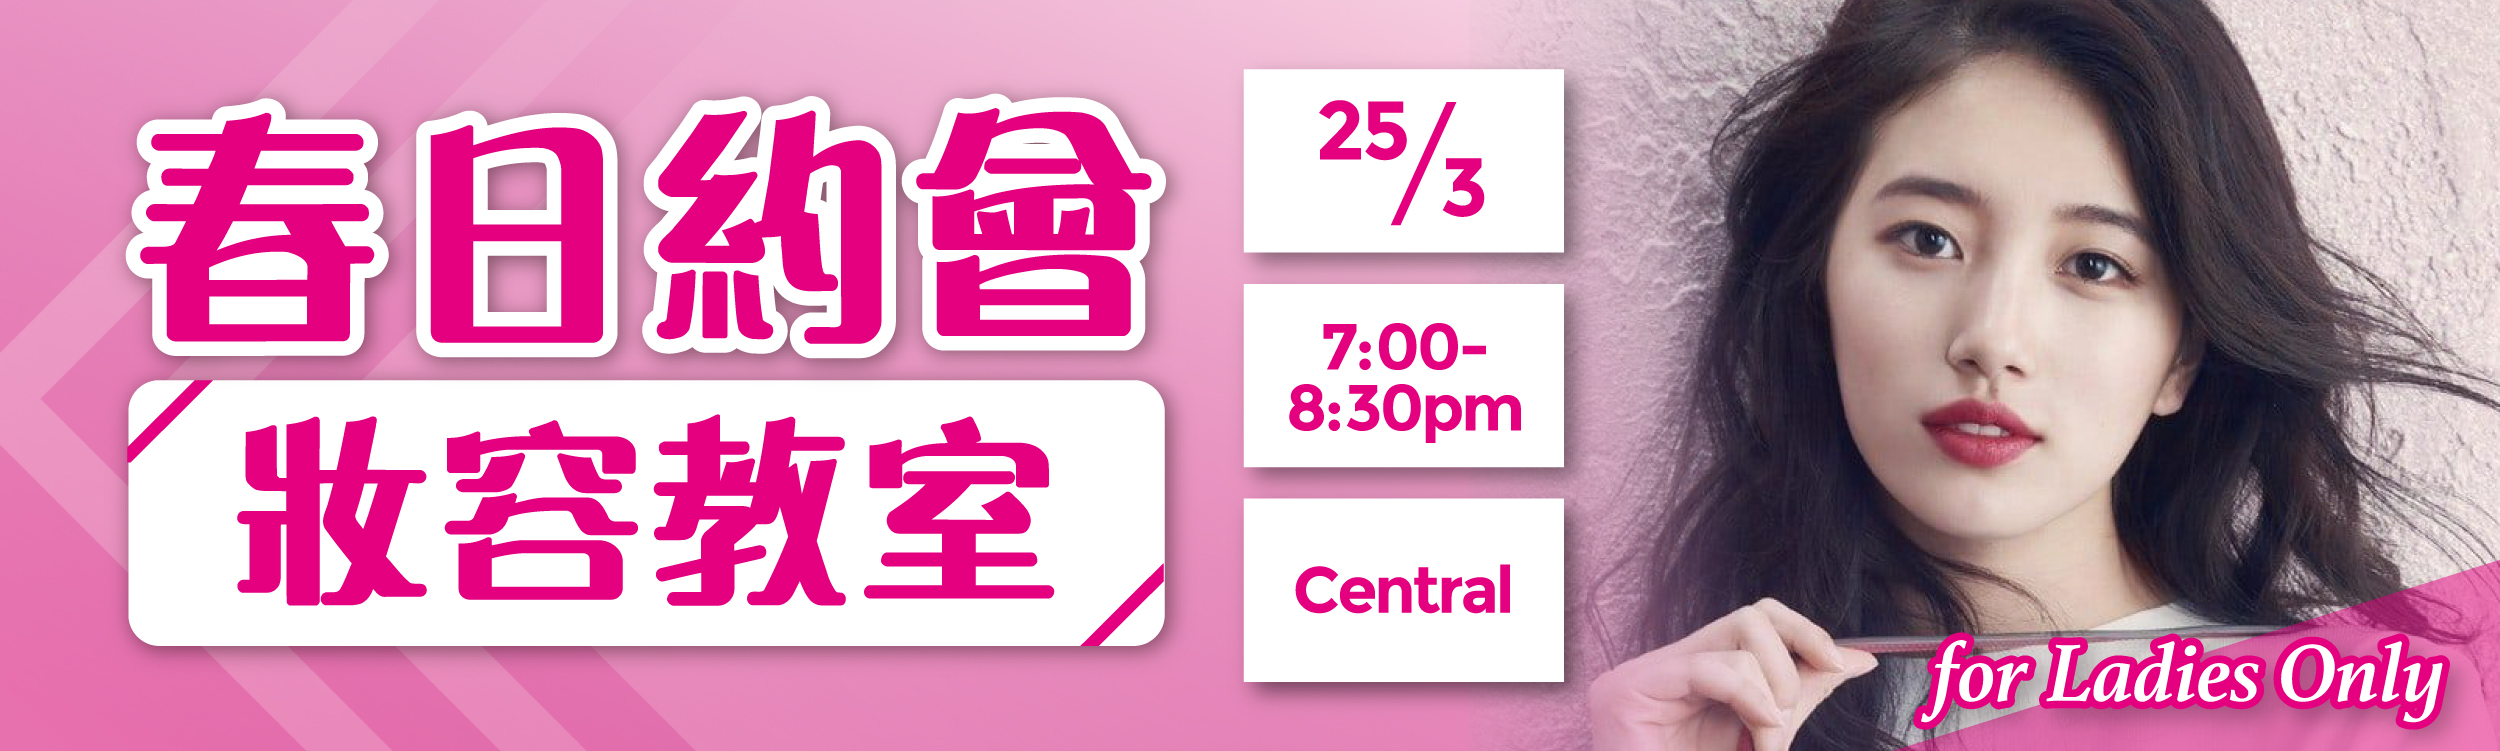 (完滿舉行)春日約會妝容教室 for Ladies Only - 2020年3月25日(星期三) 香港交友約會業協會 Hong Kong Speed Dating Federation - Speed Dating , 一對一約會, 單對單約會, 約會行業, 約會配對